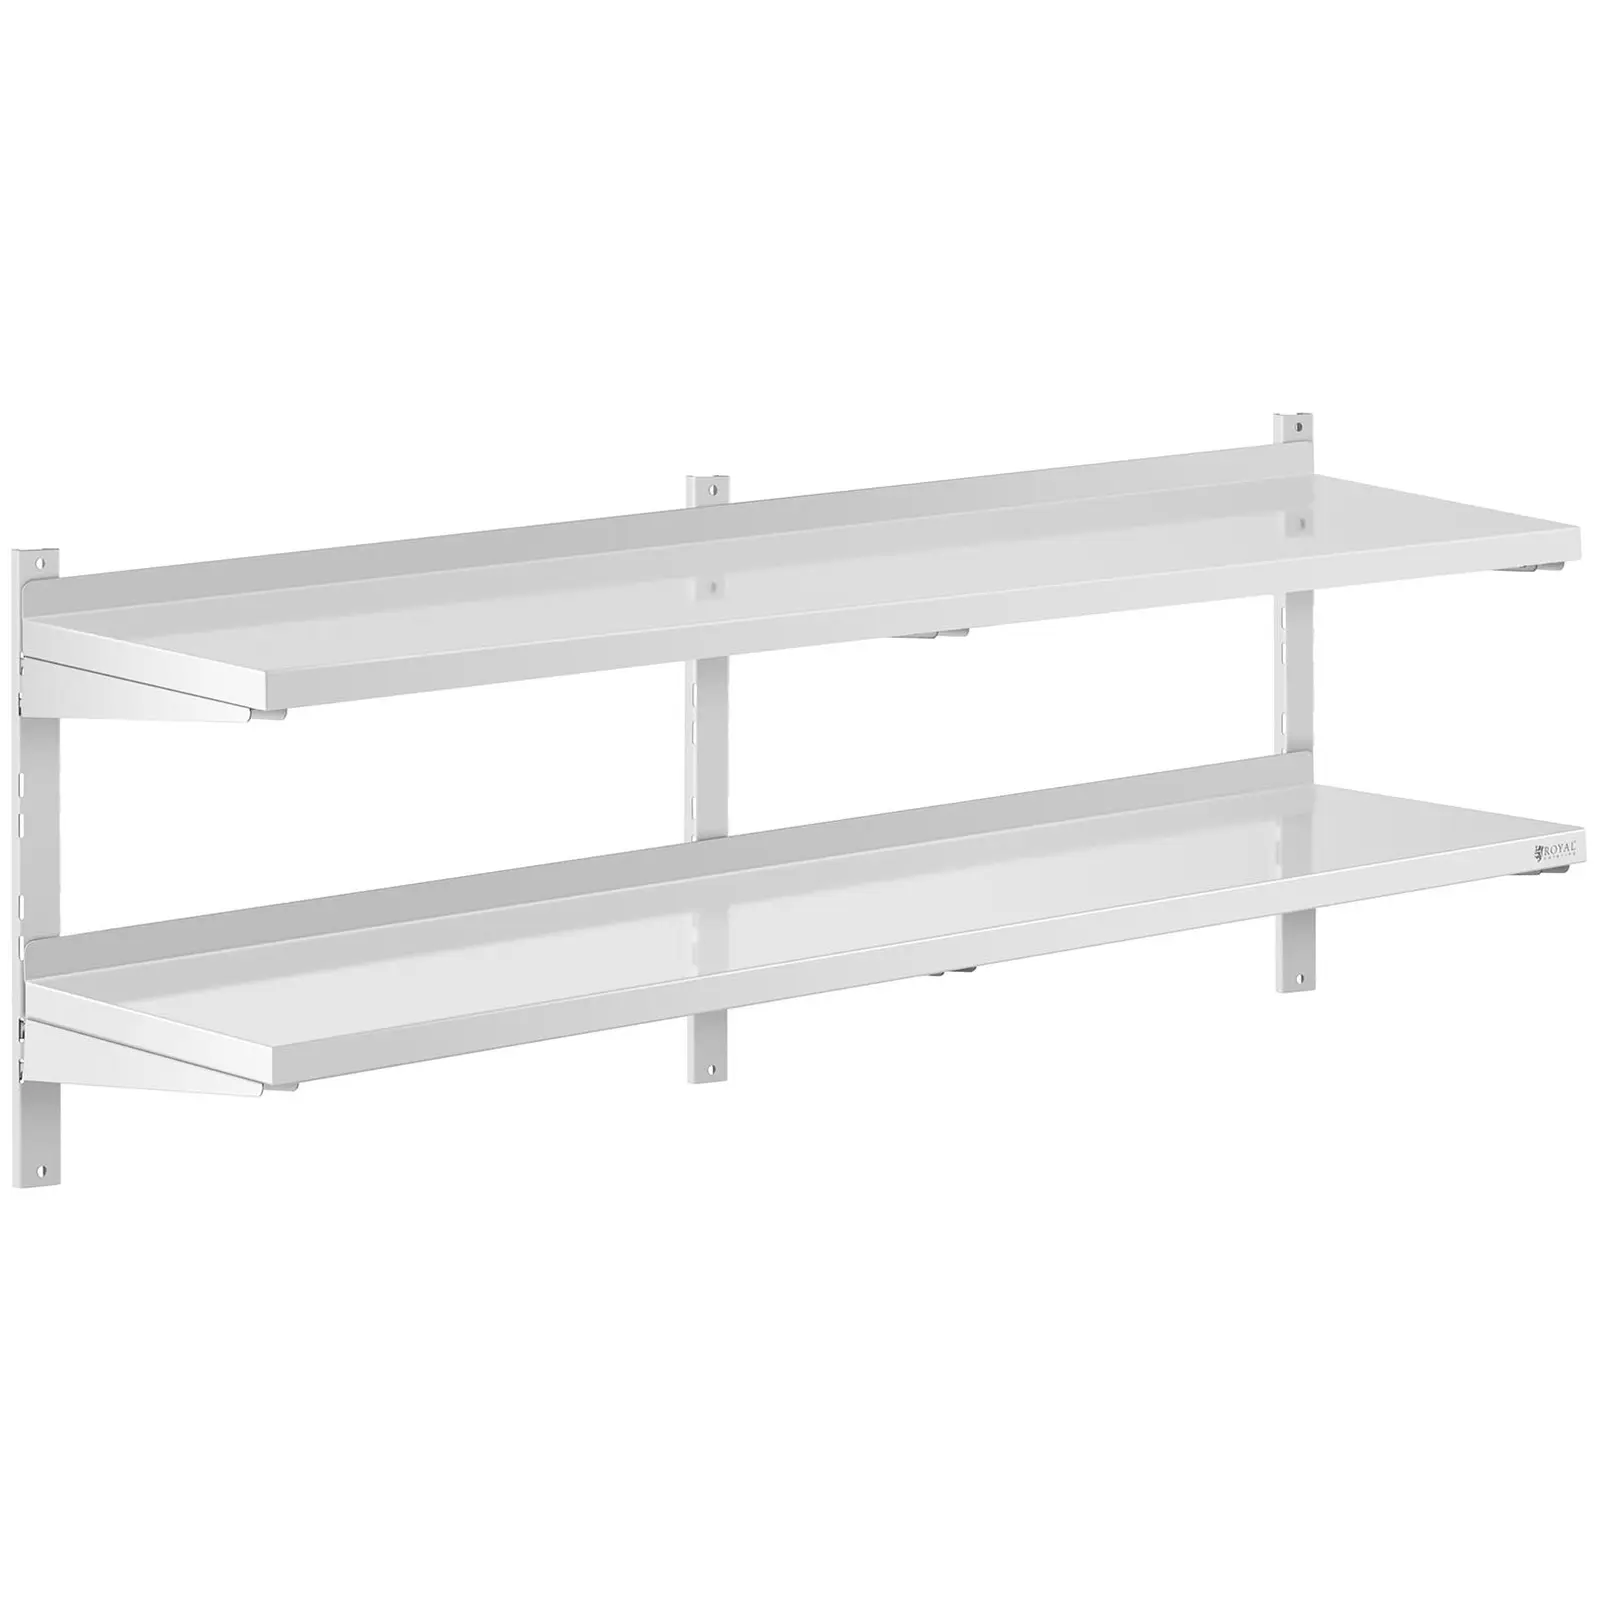 Stainless Steel Wall Shelf - 2 shelves - 40 x 160 cm